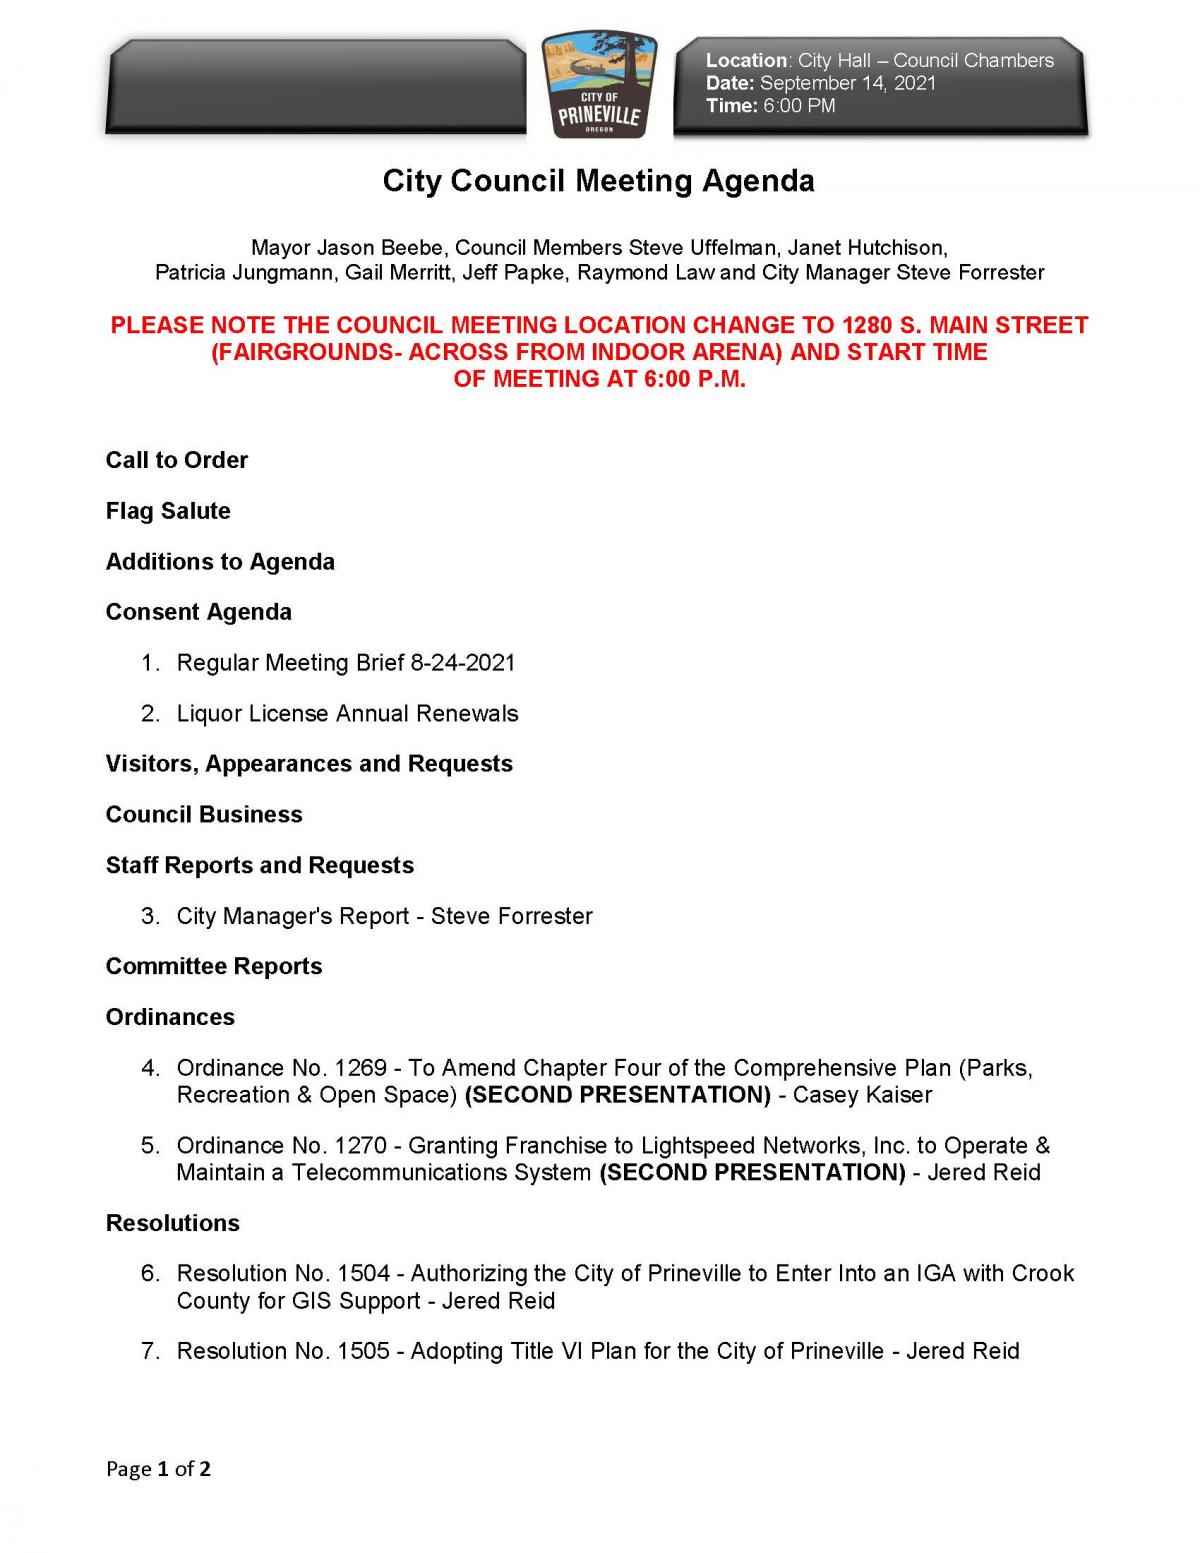 Page 1 - Council Agenda